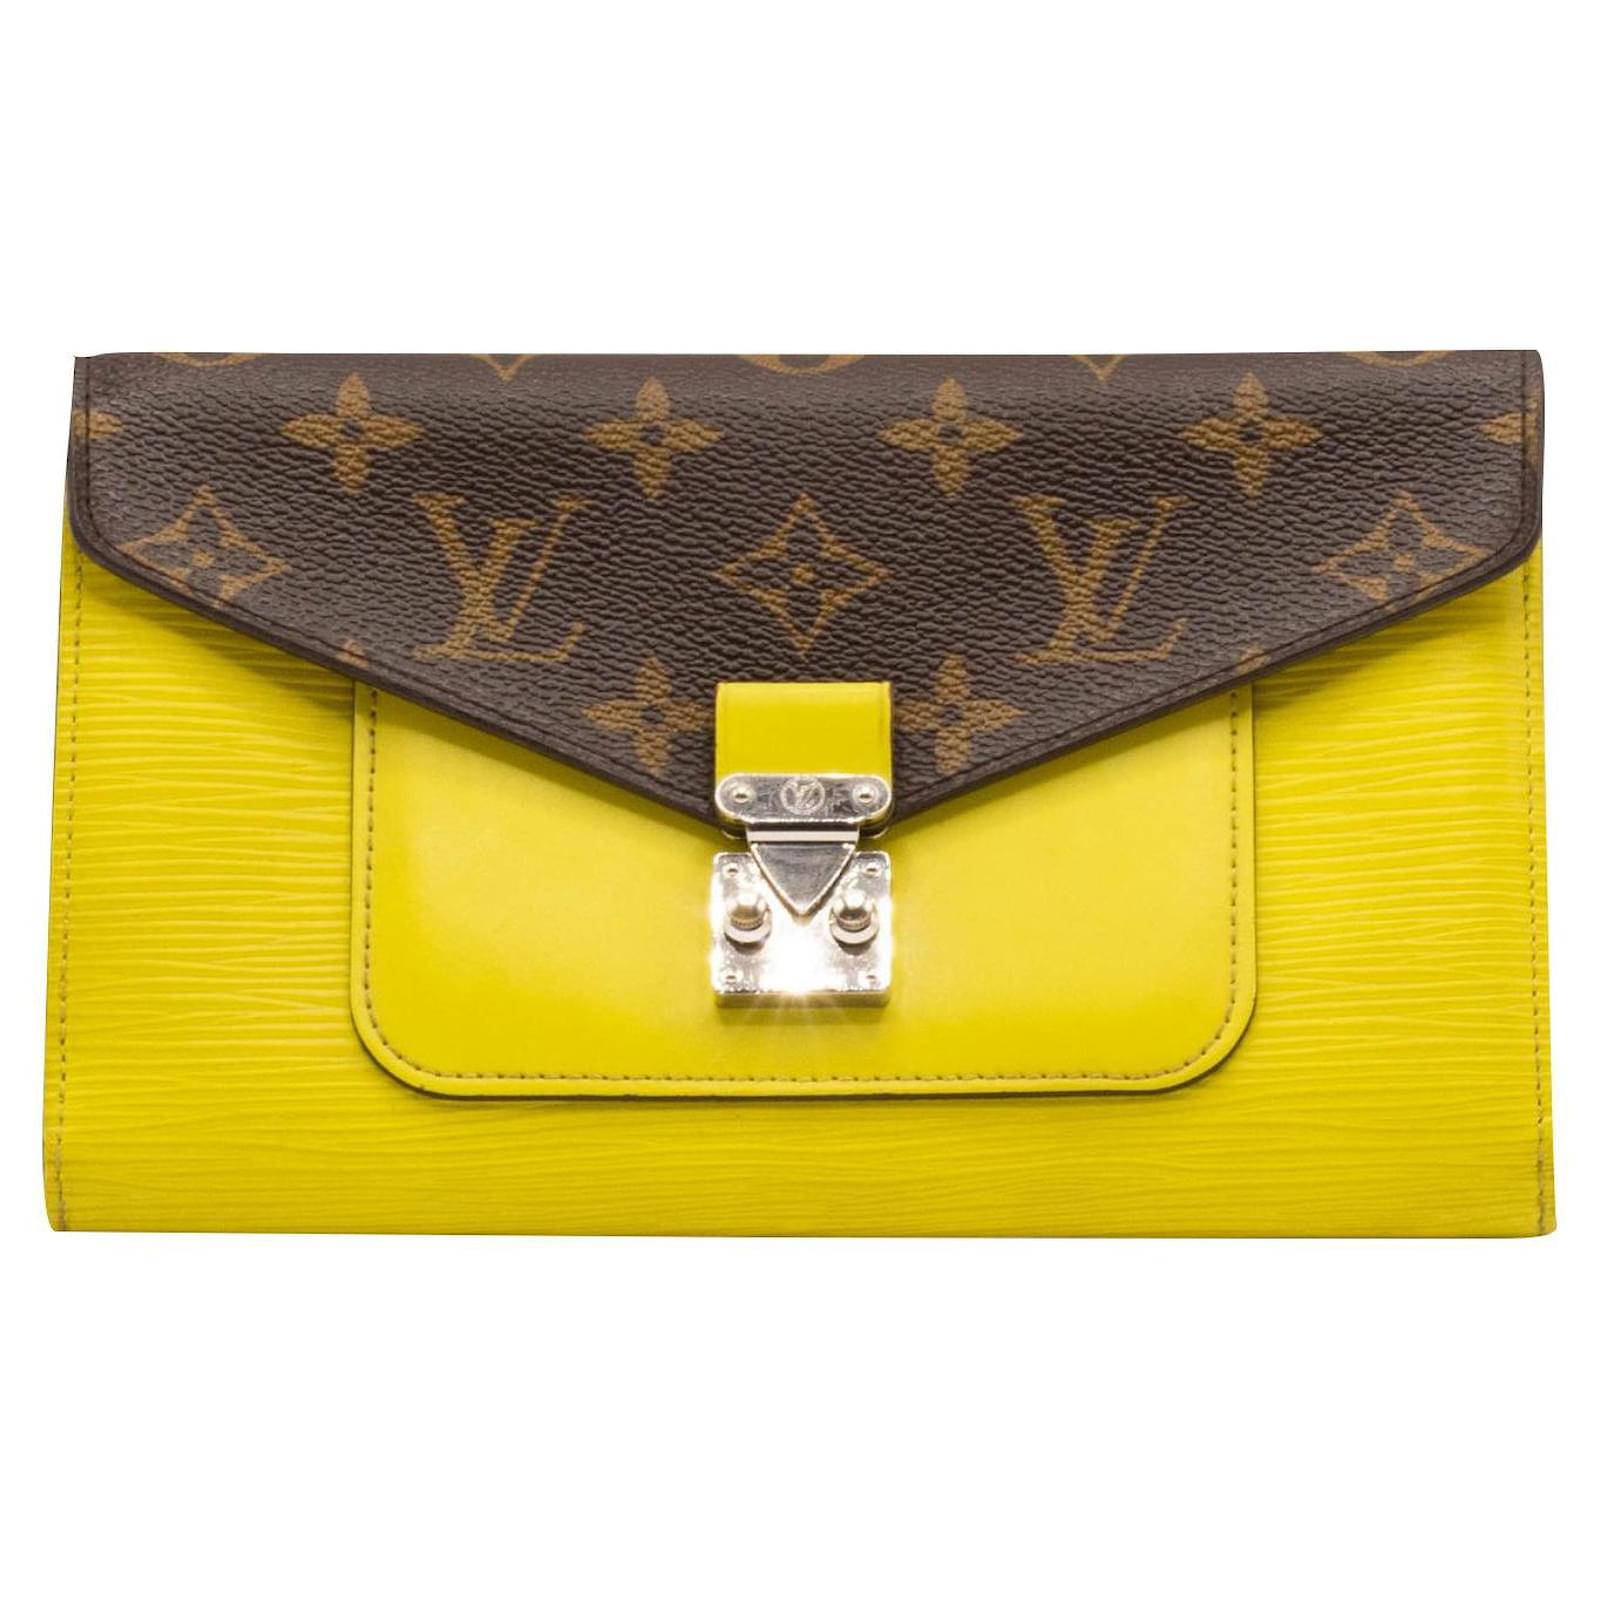 Authentic Louis Vuitton clutch bag/ wallet New Louis Vuitton